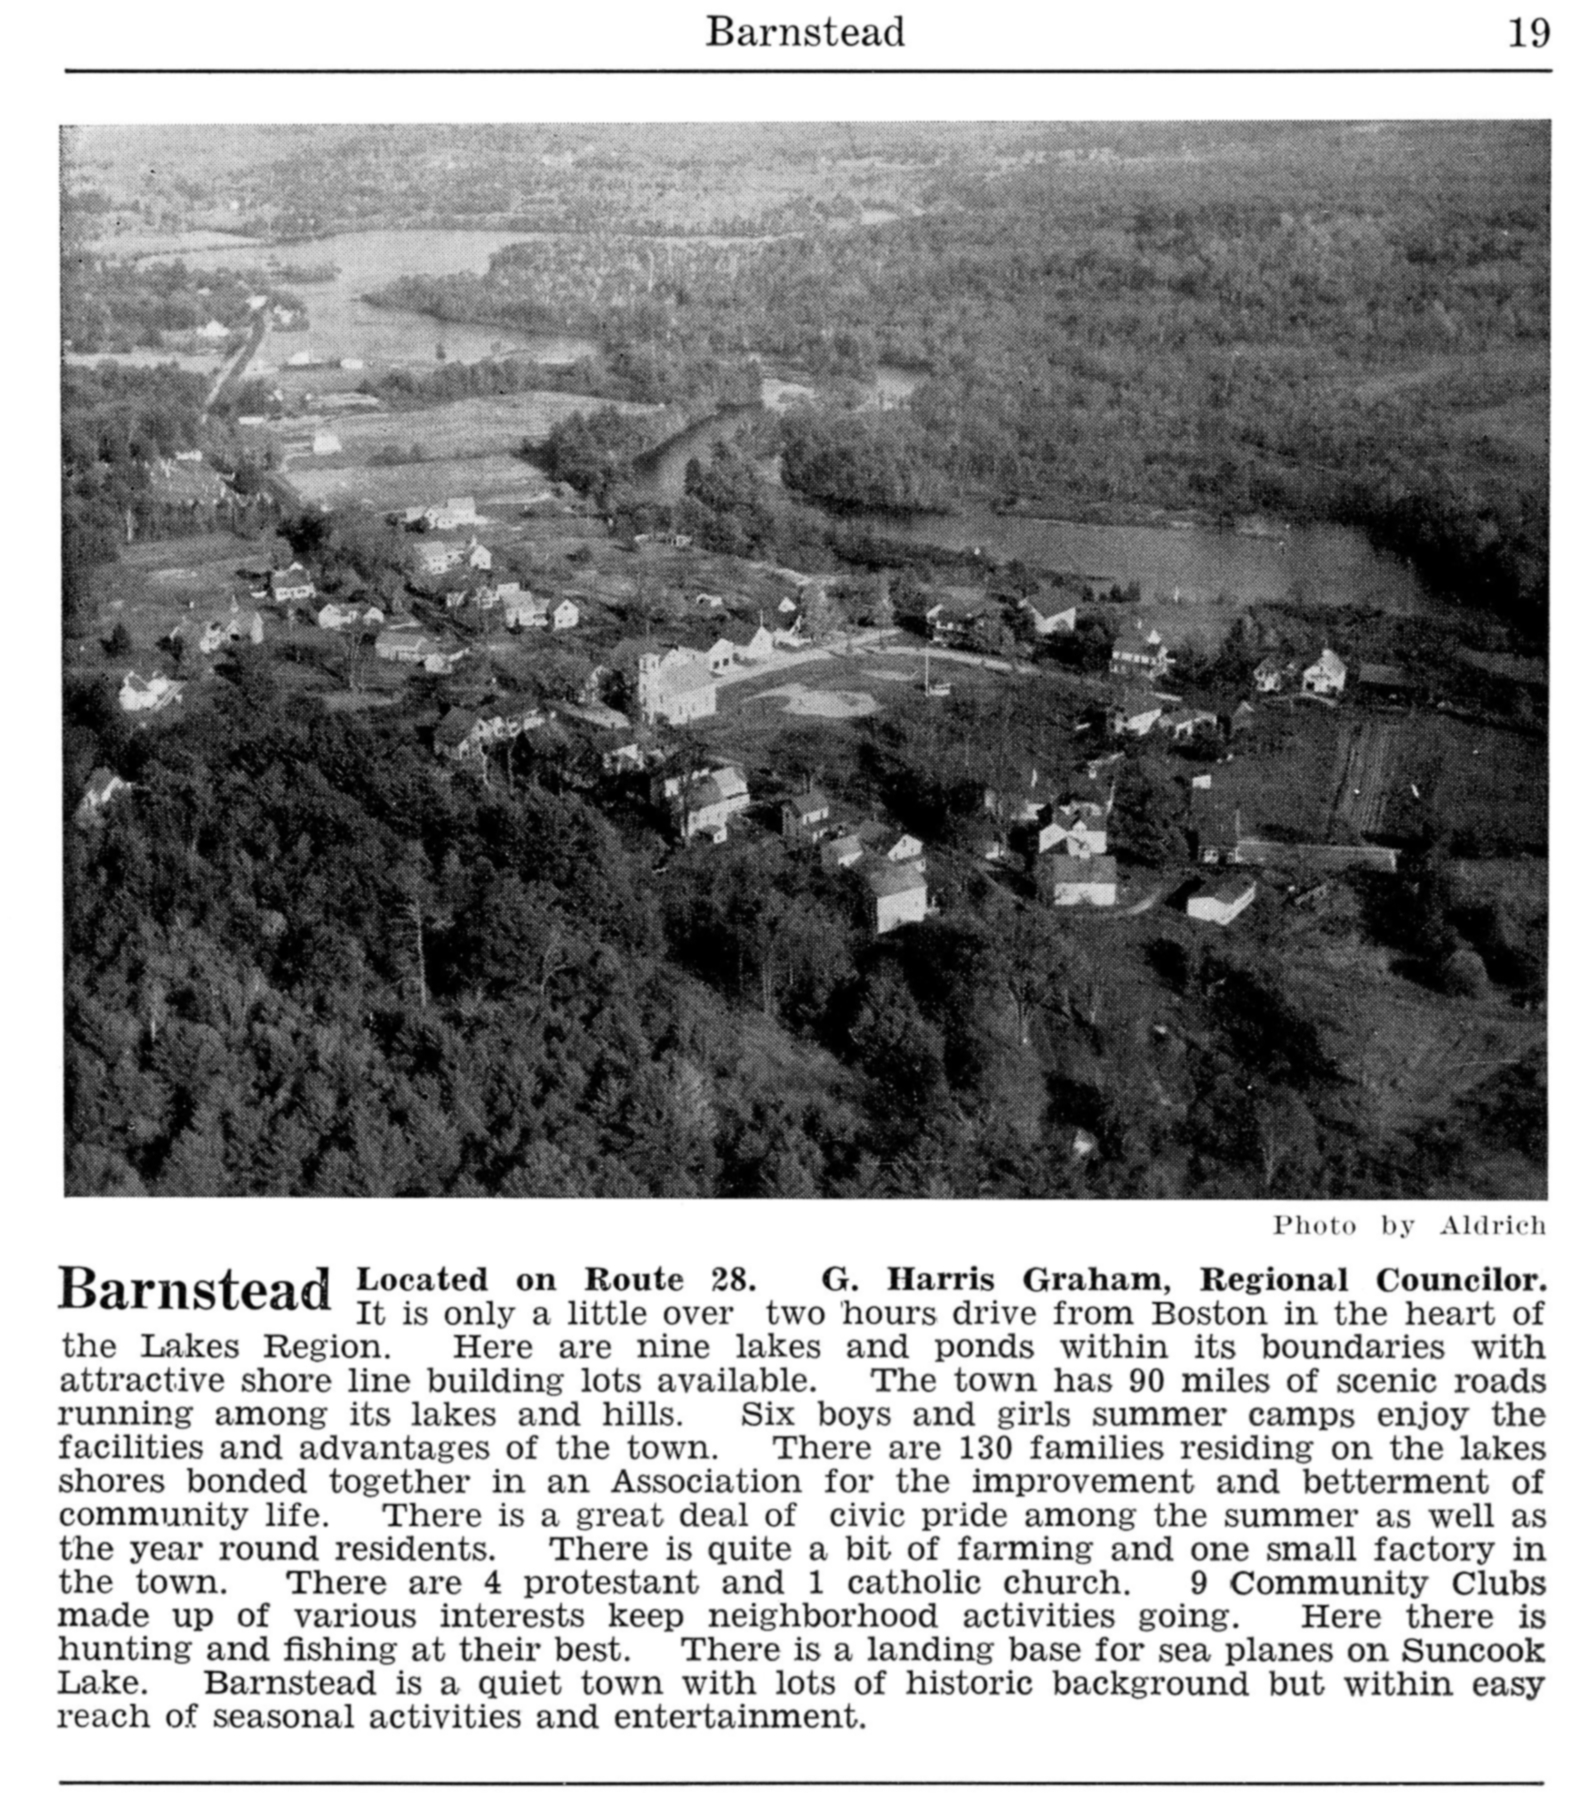 Barnstead - Lakes Region 1954